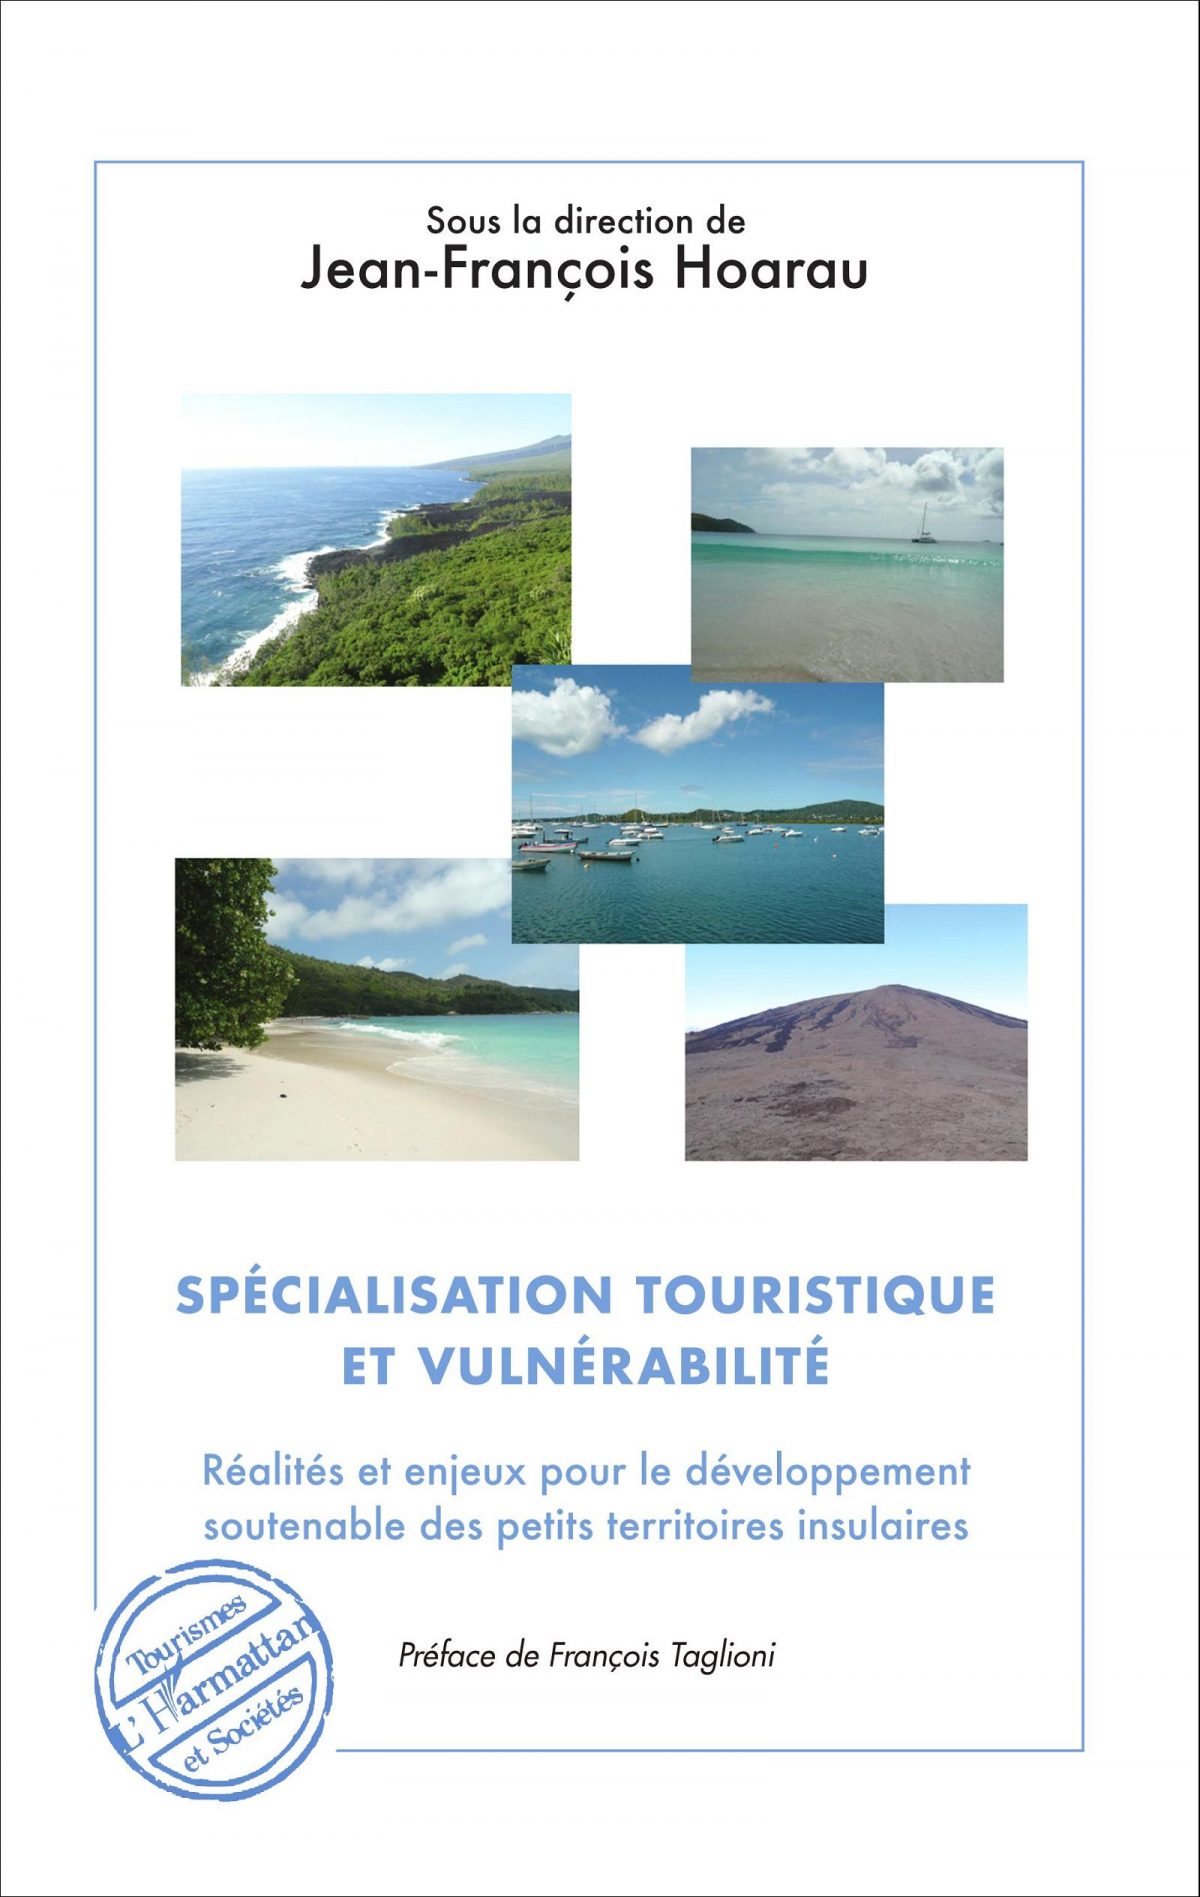 Spécialisation touristique et vulnérabilité, réalités et enjeux pour le développement soutenable des petits territoires insulaires, Paris : L’Harmattan, 2016.